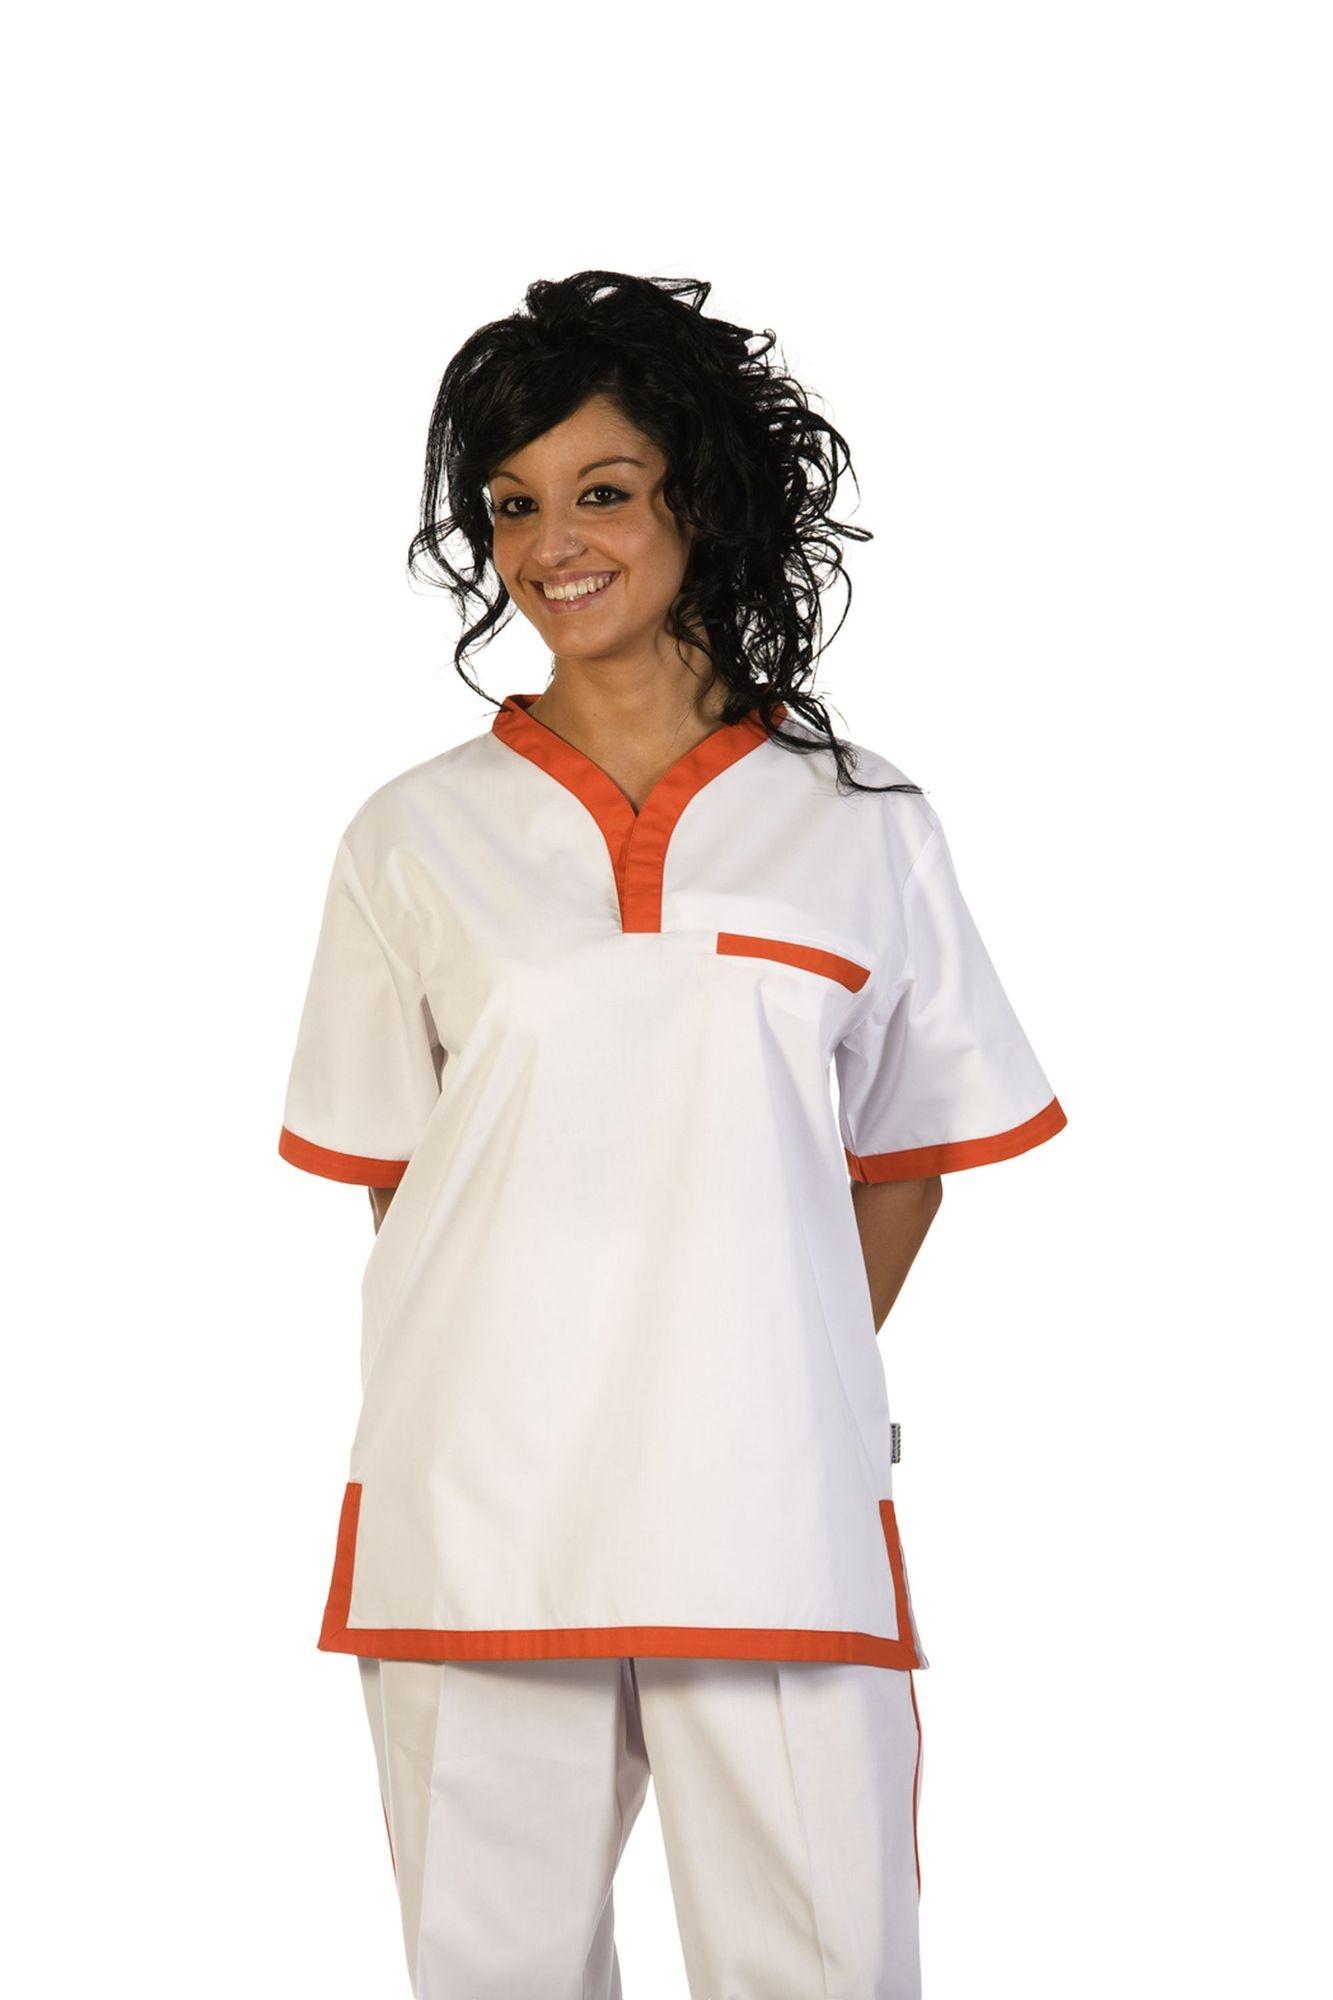 Foto Pantalón unisex con elástico en cintura color blanco&naranja Talla XXL foto 290658